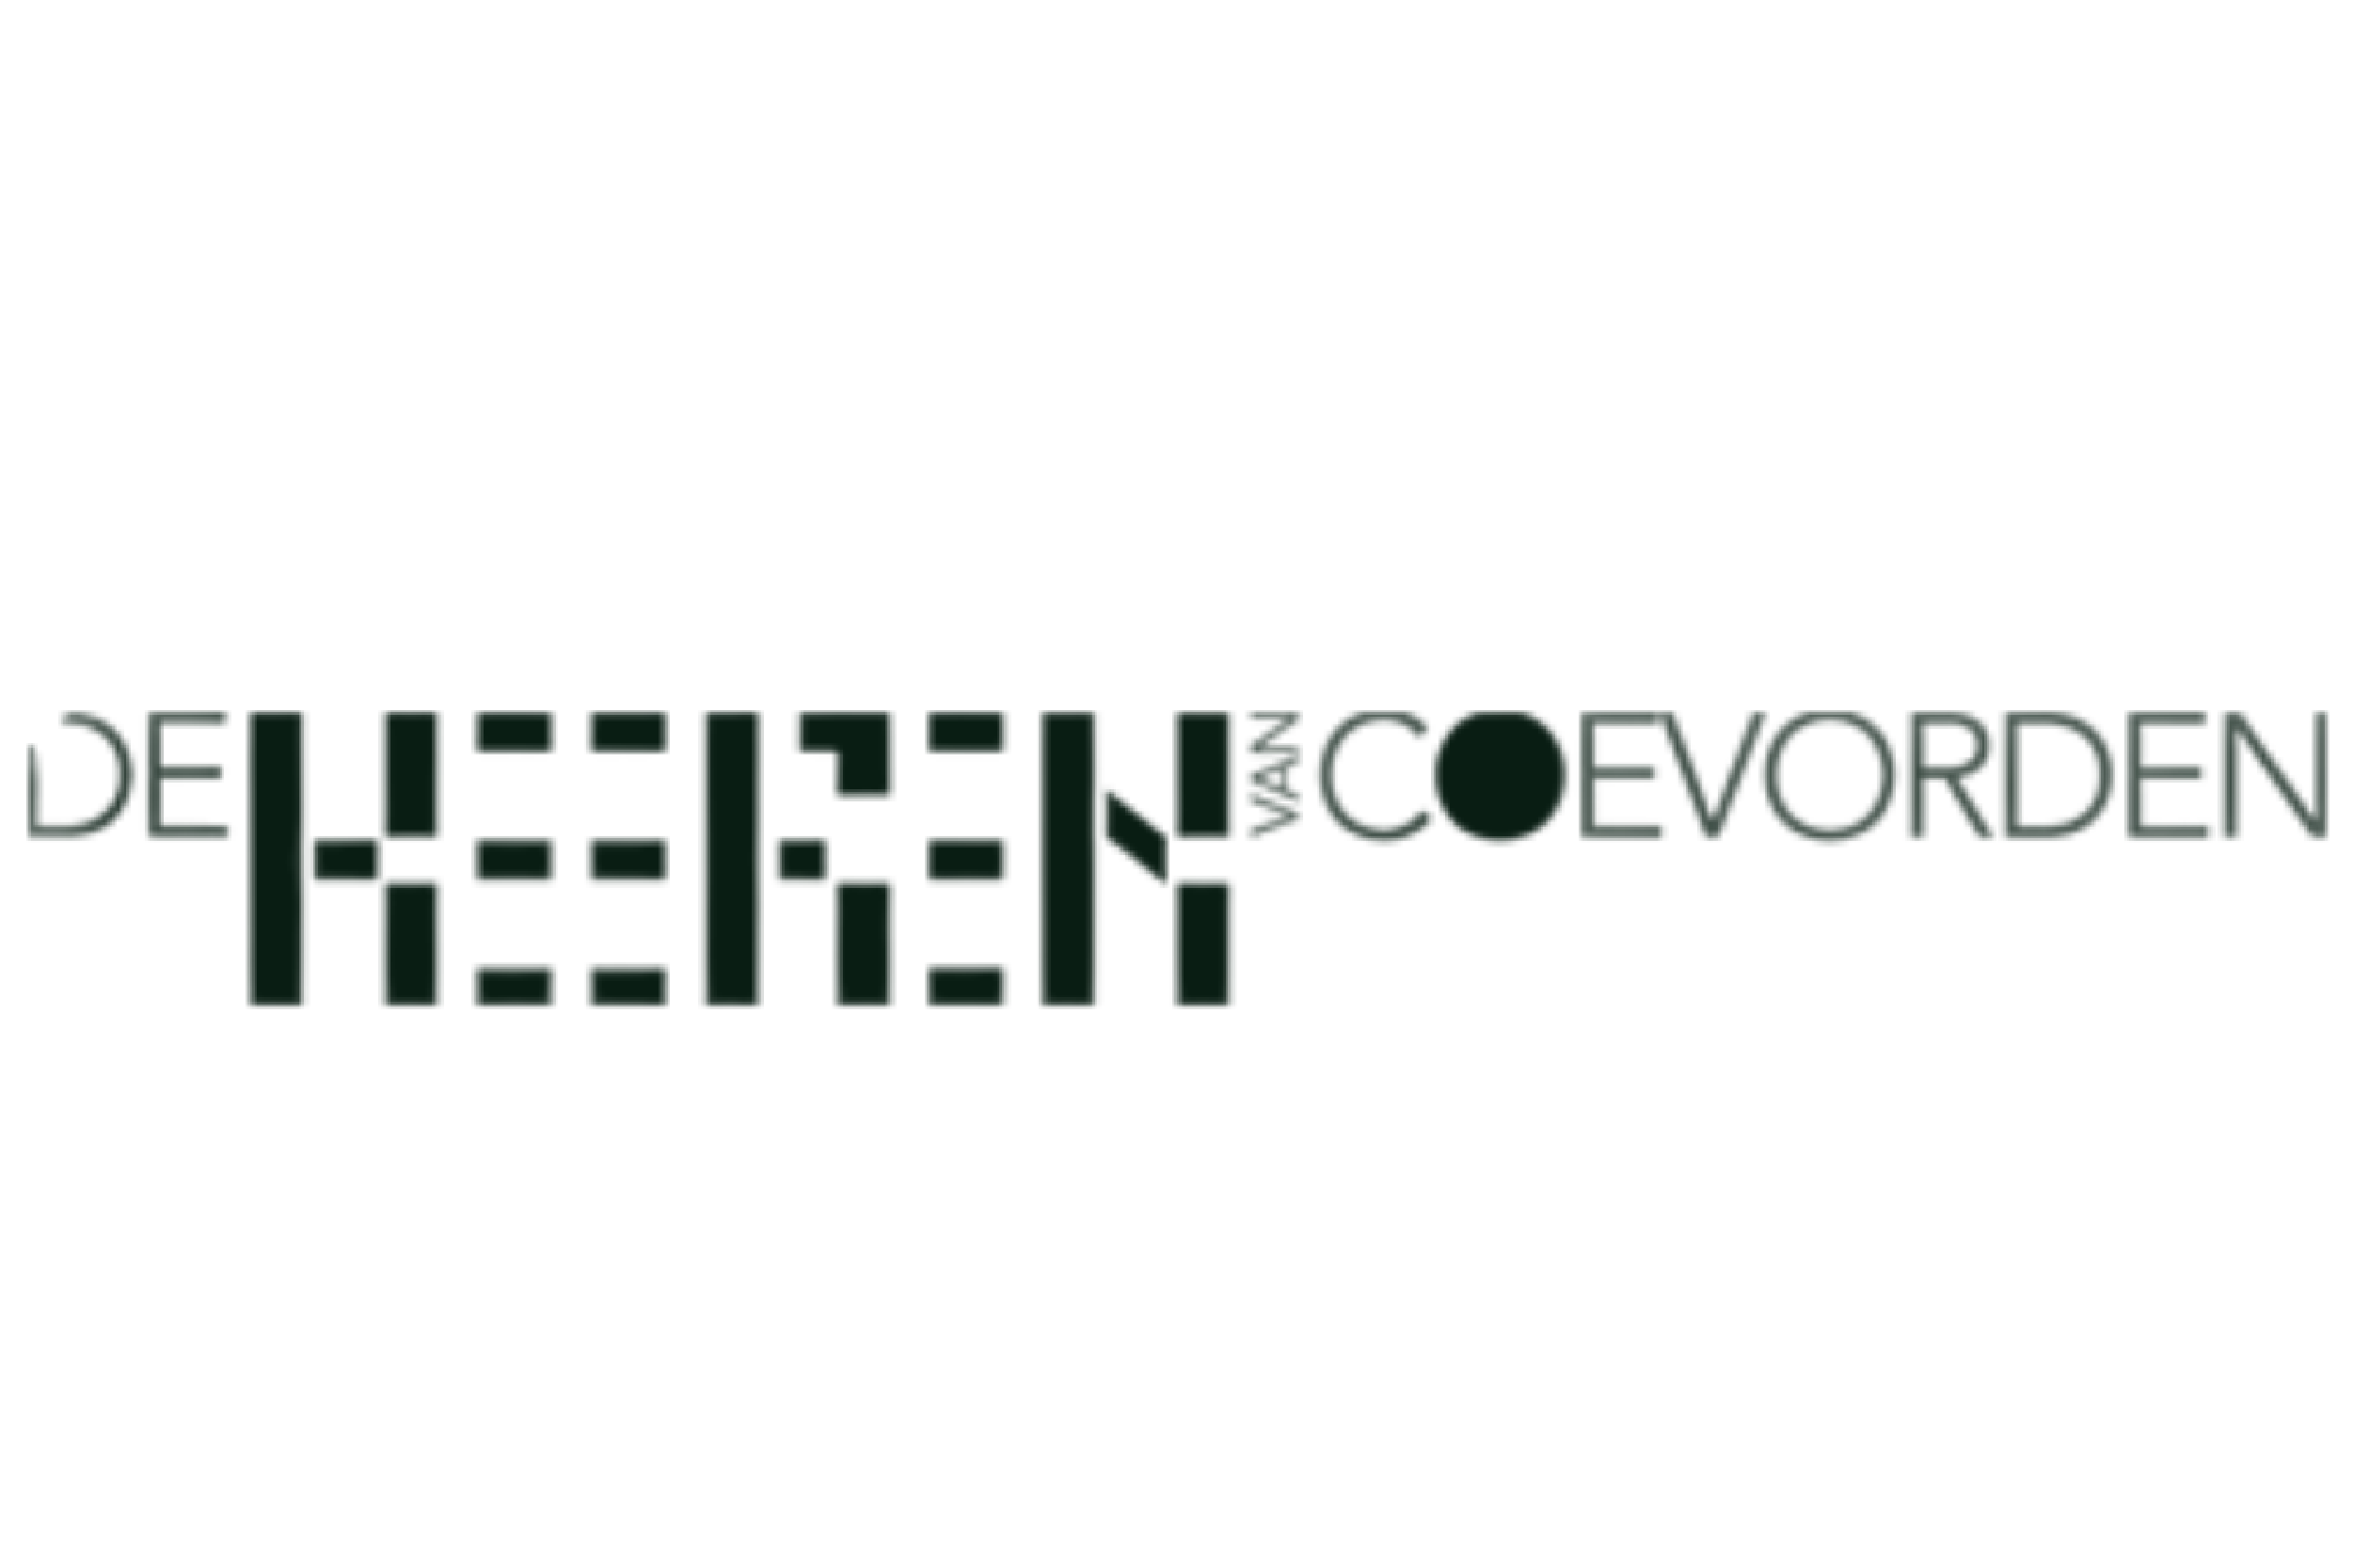 De Heeren van Coevorden logo